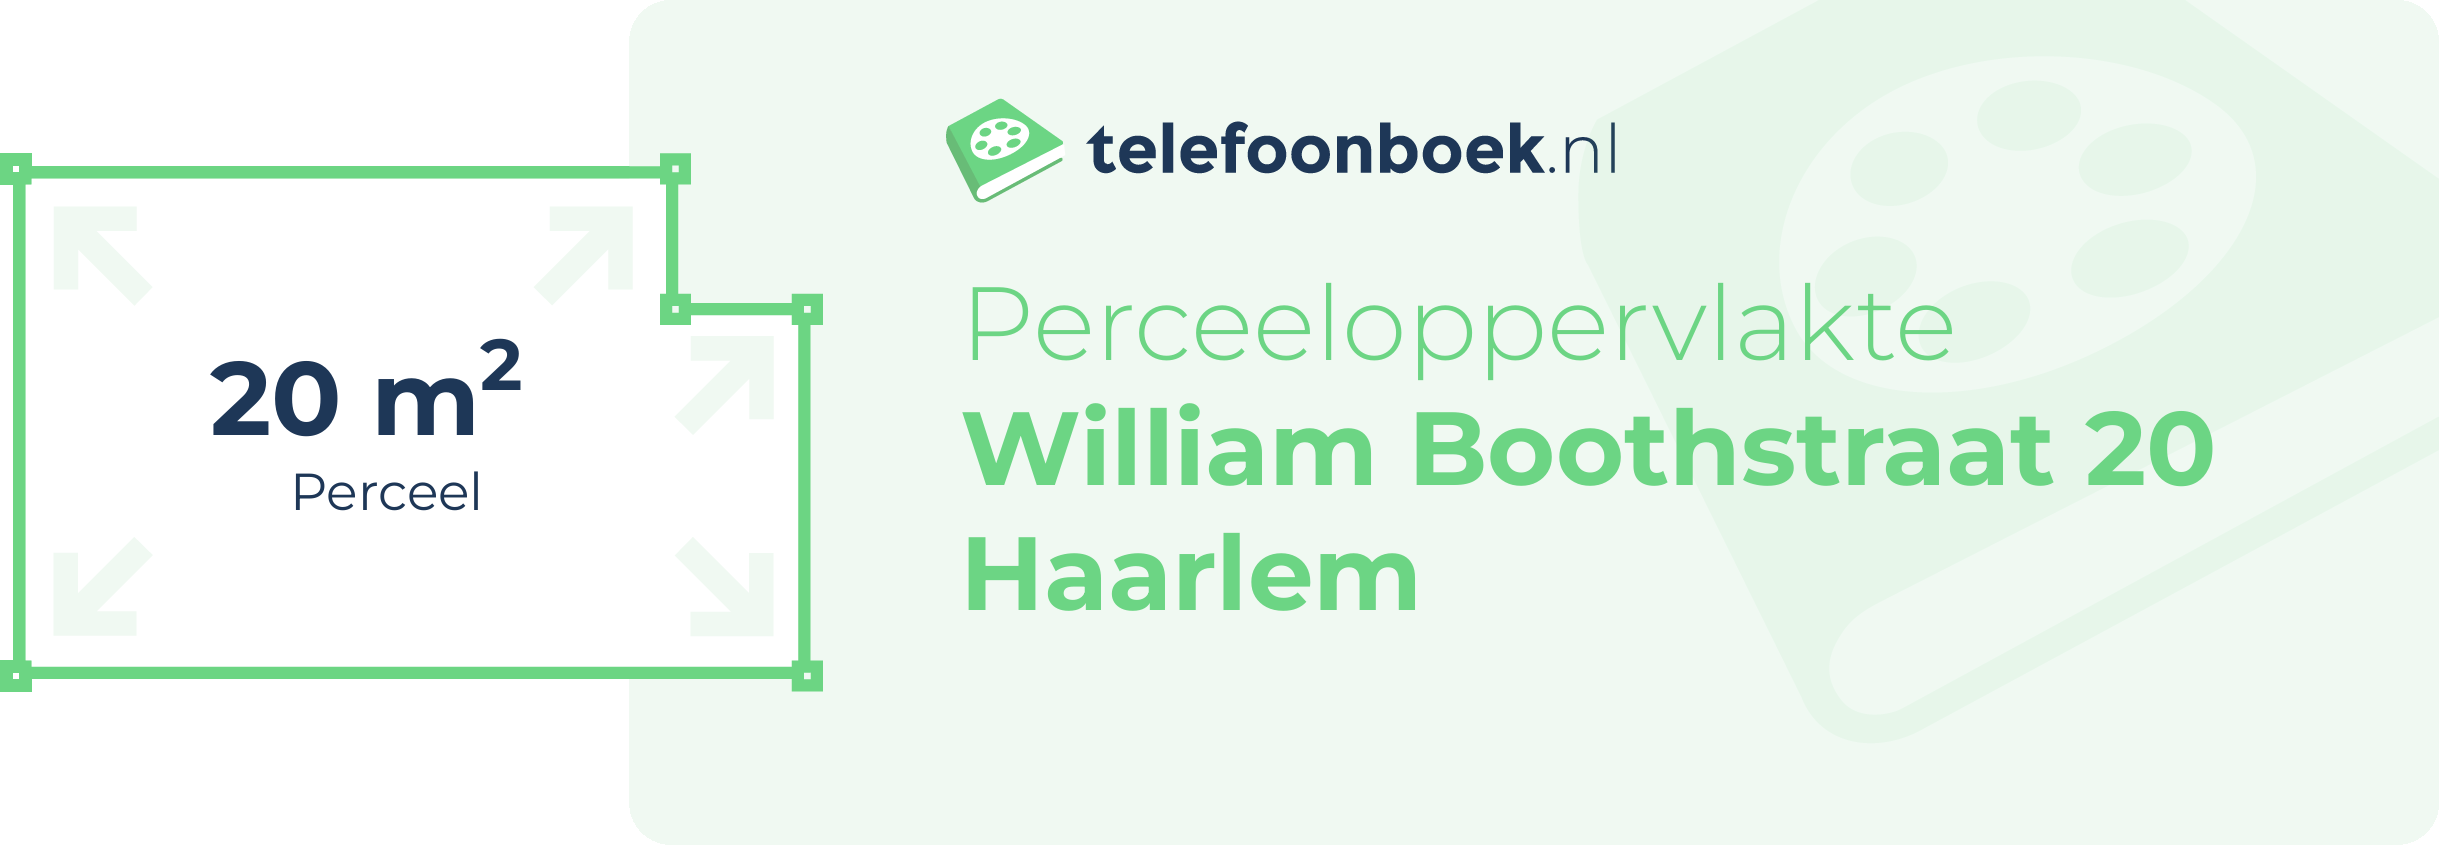 Perceeloppervlakte William Boothstraat 20 Haarlem